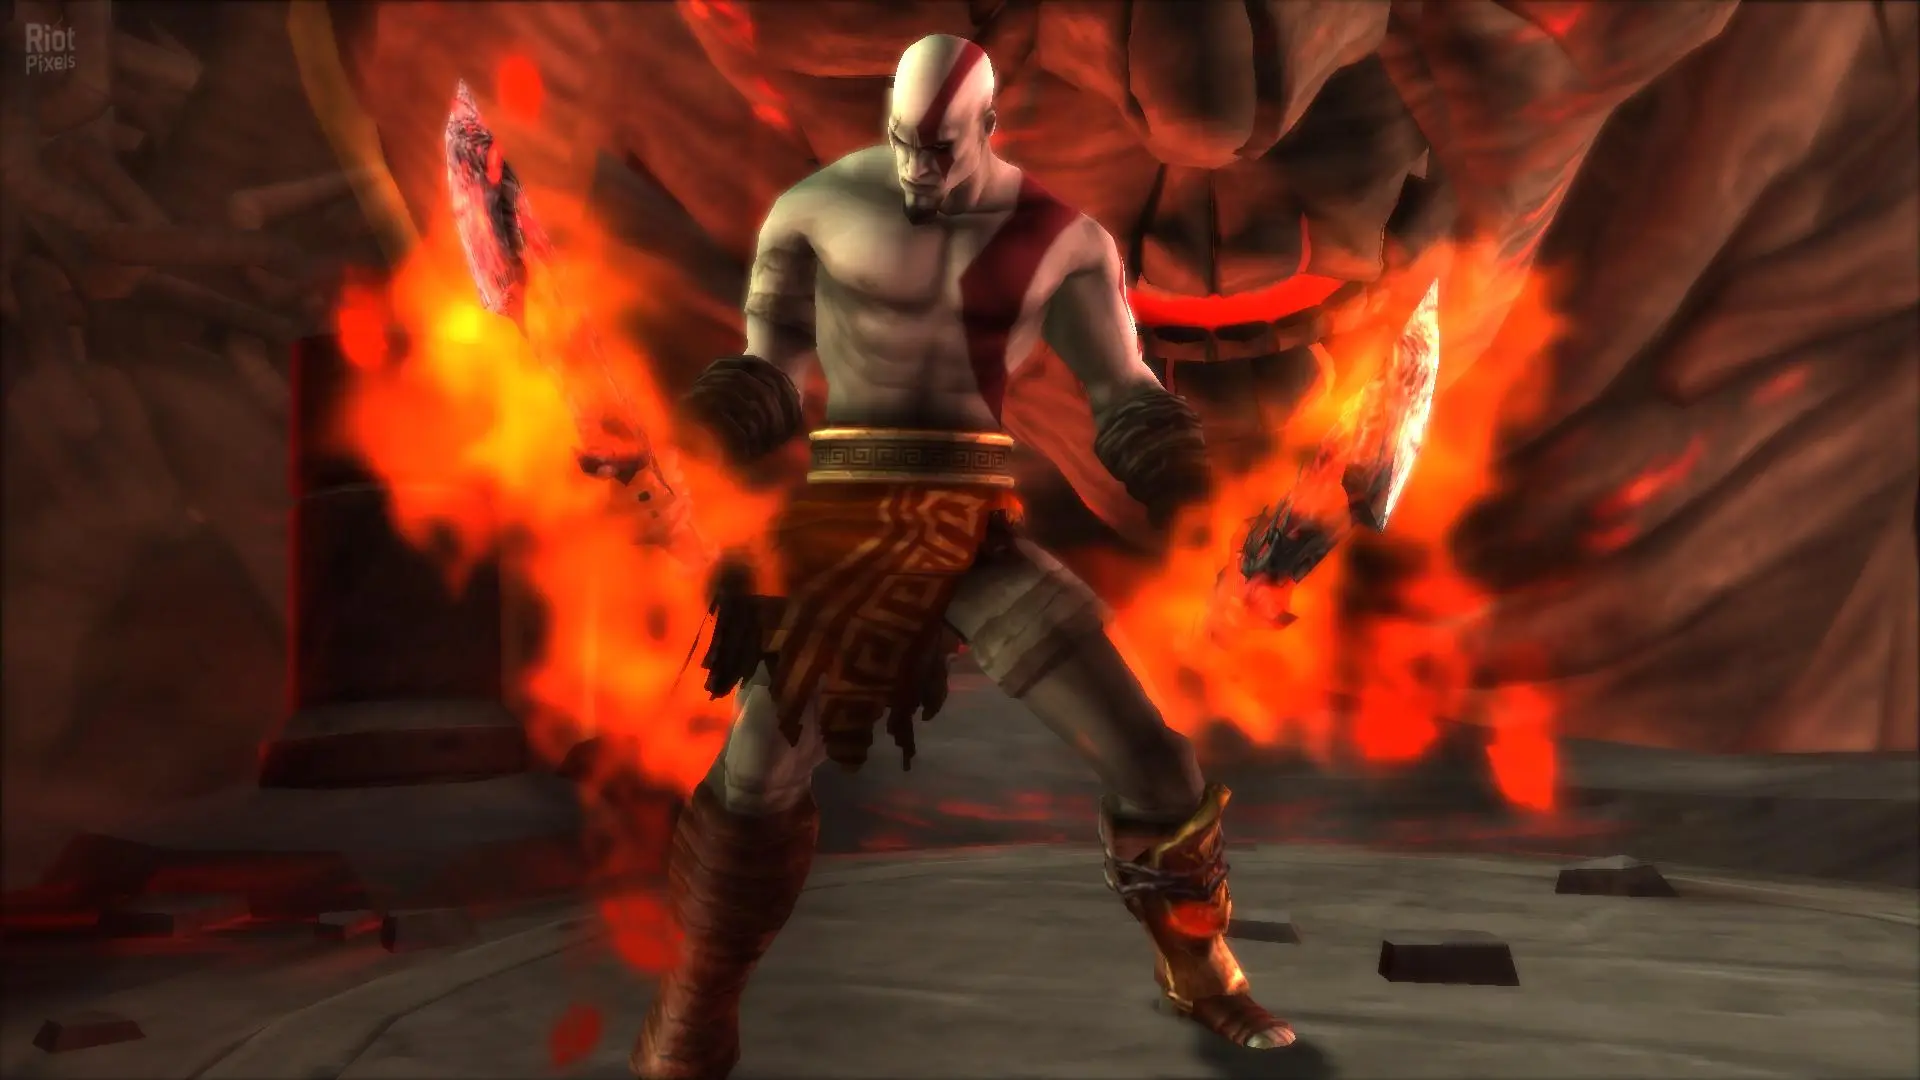 دانلود بازی God of War: Origins Collection برای کامپیوتر PC